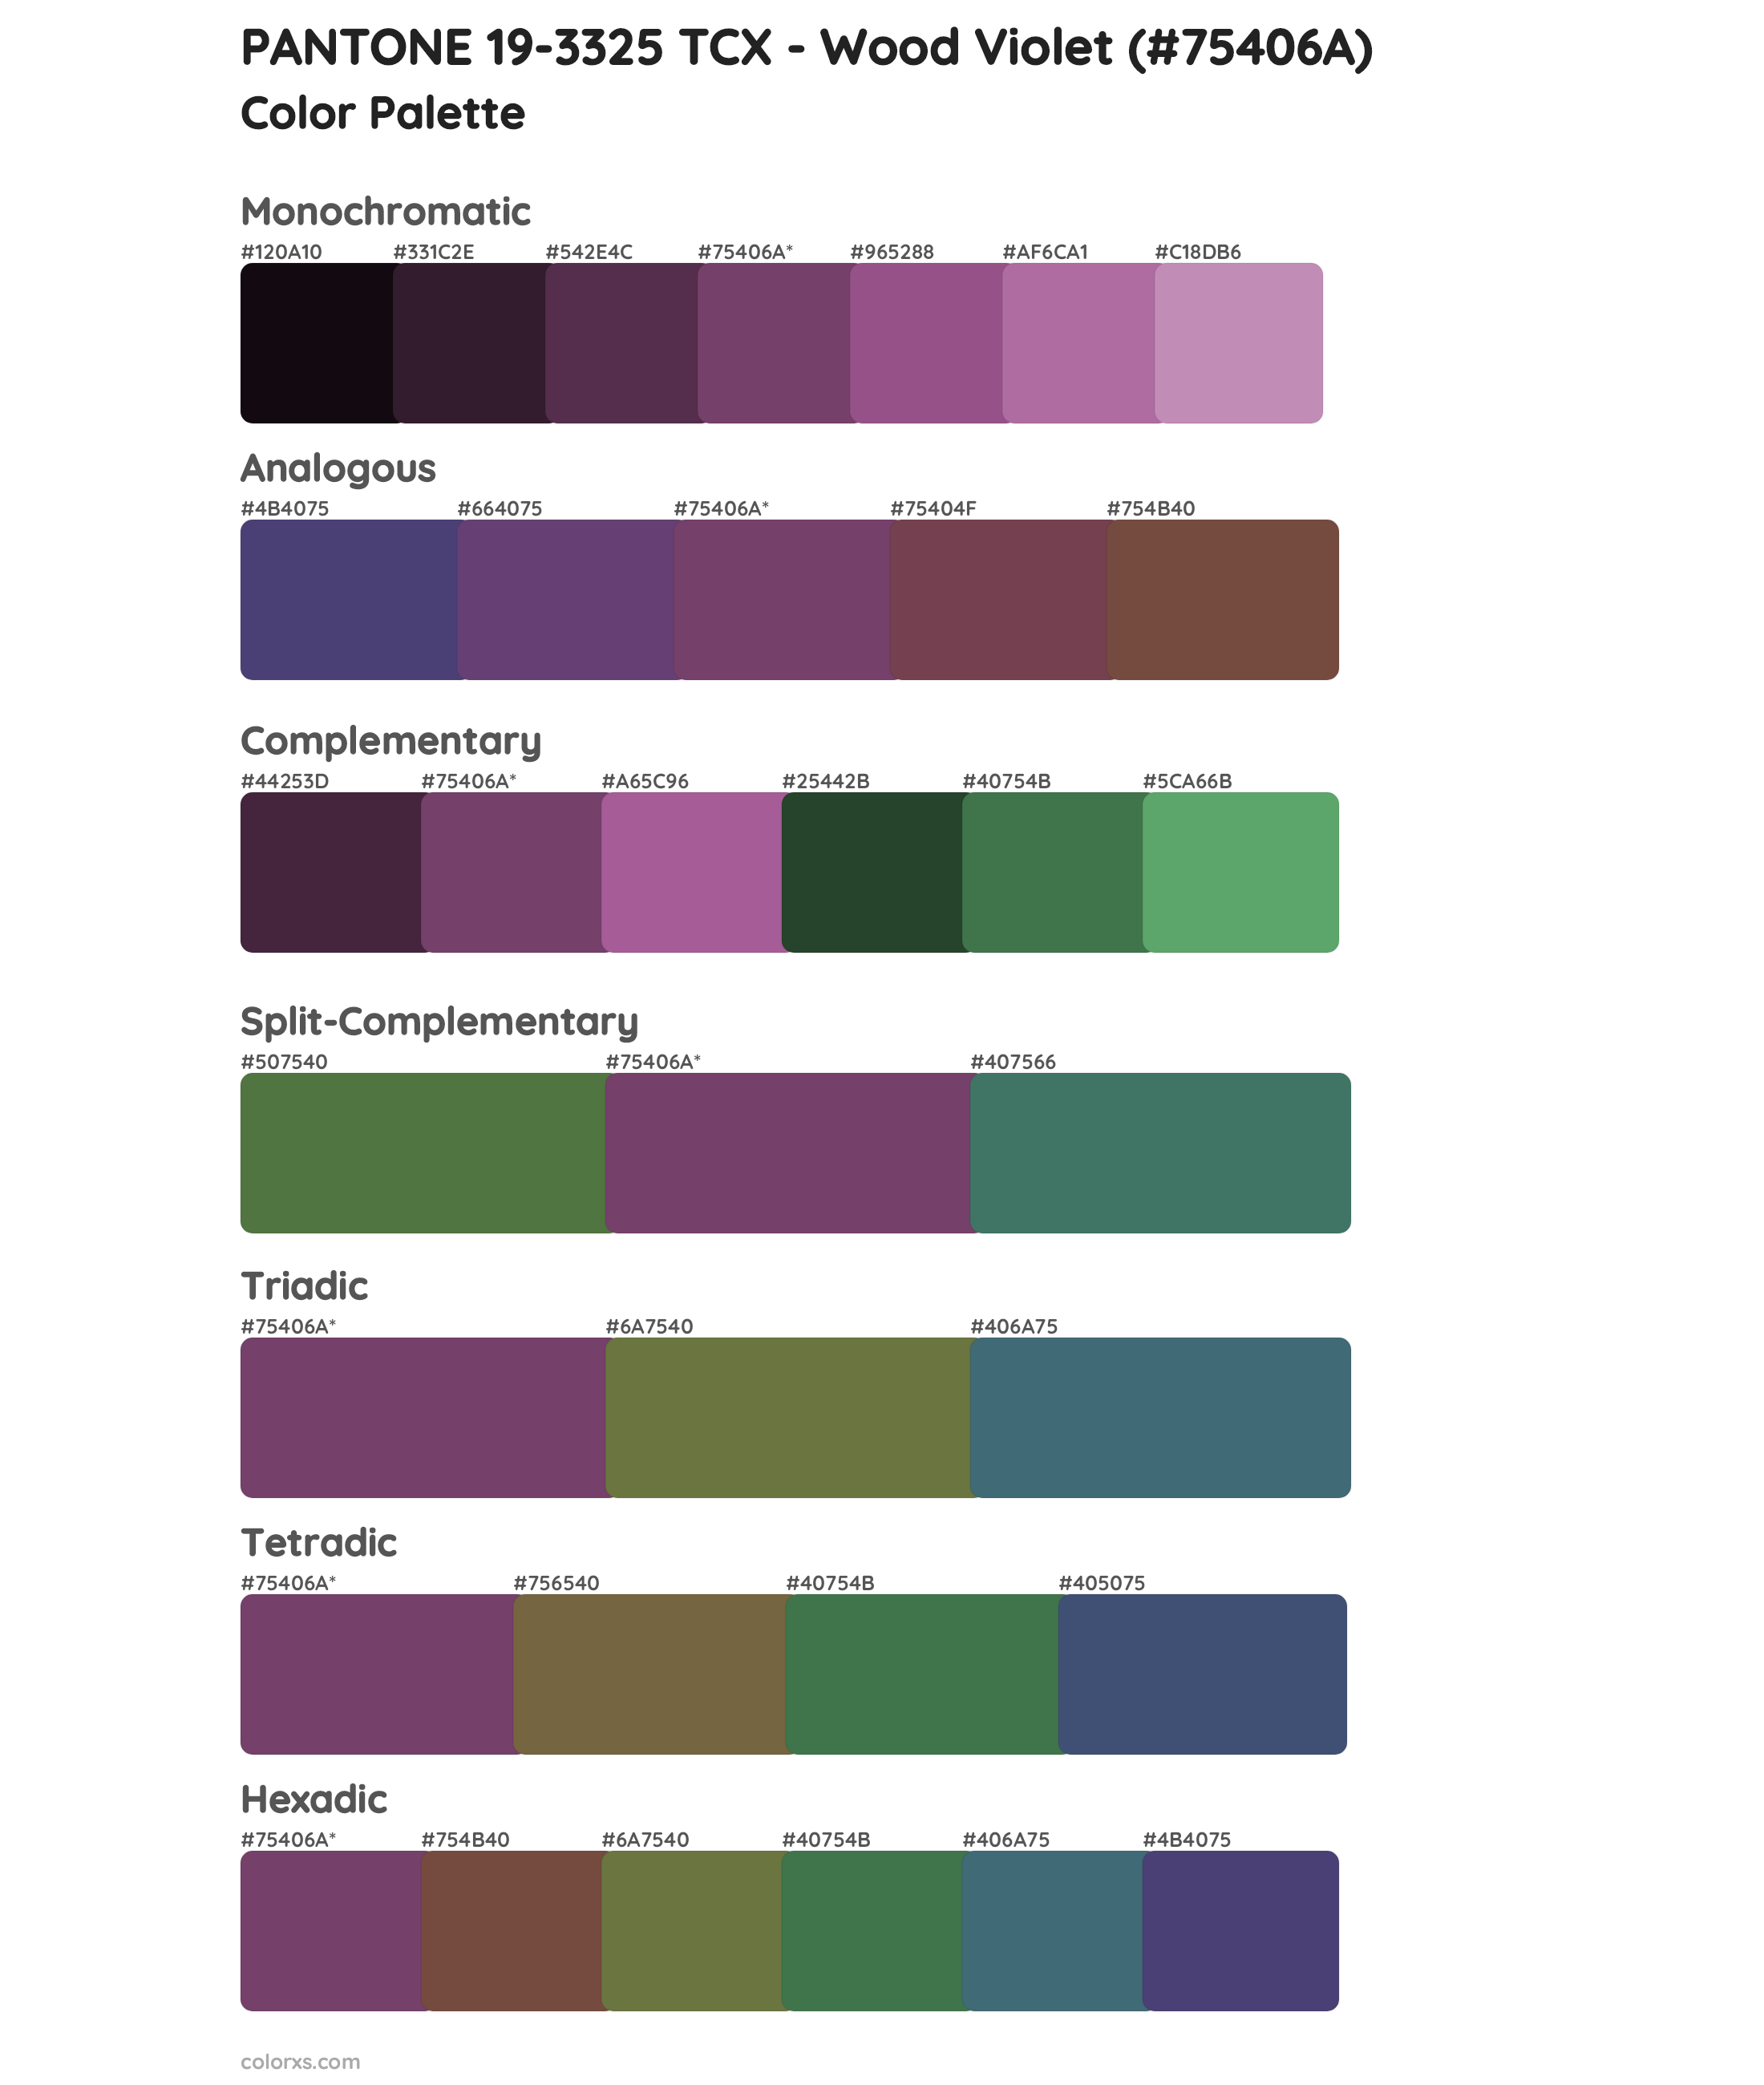 PANTONE 19-3325 TCX - Wood Violet Color Scheme Palettes